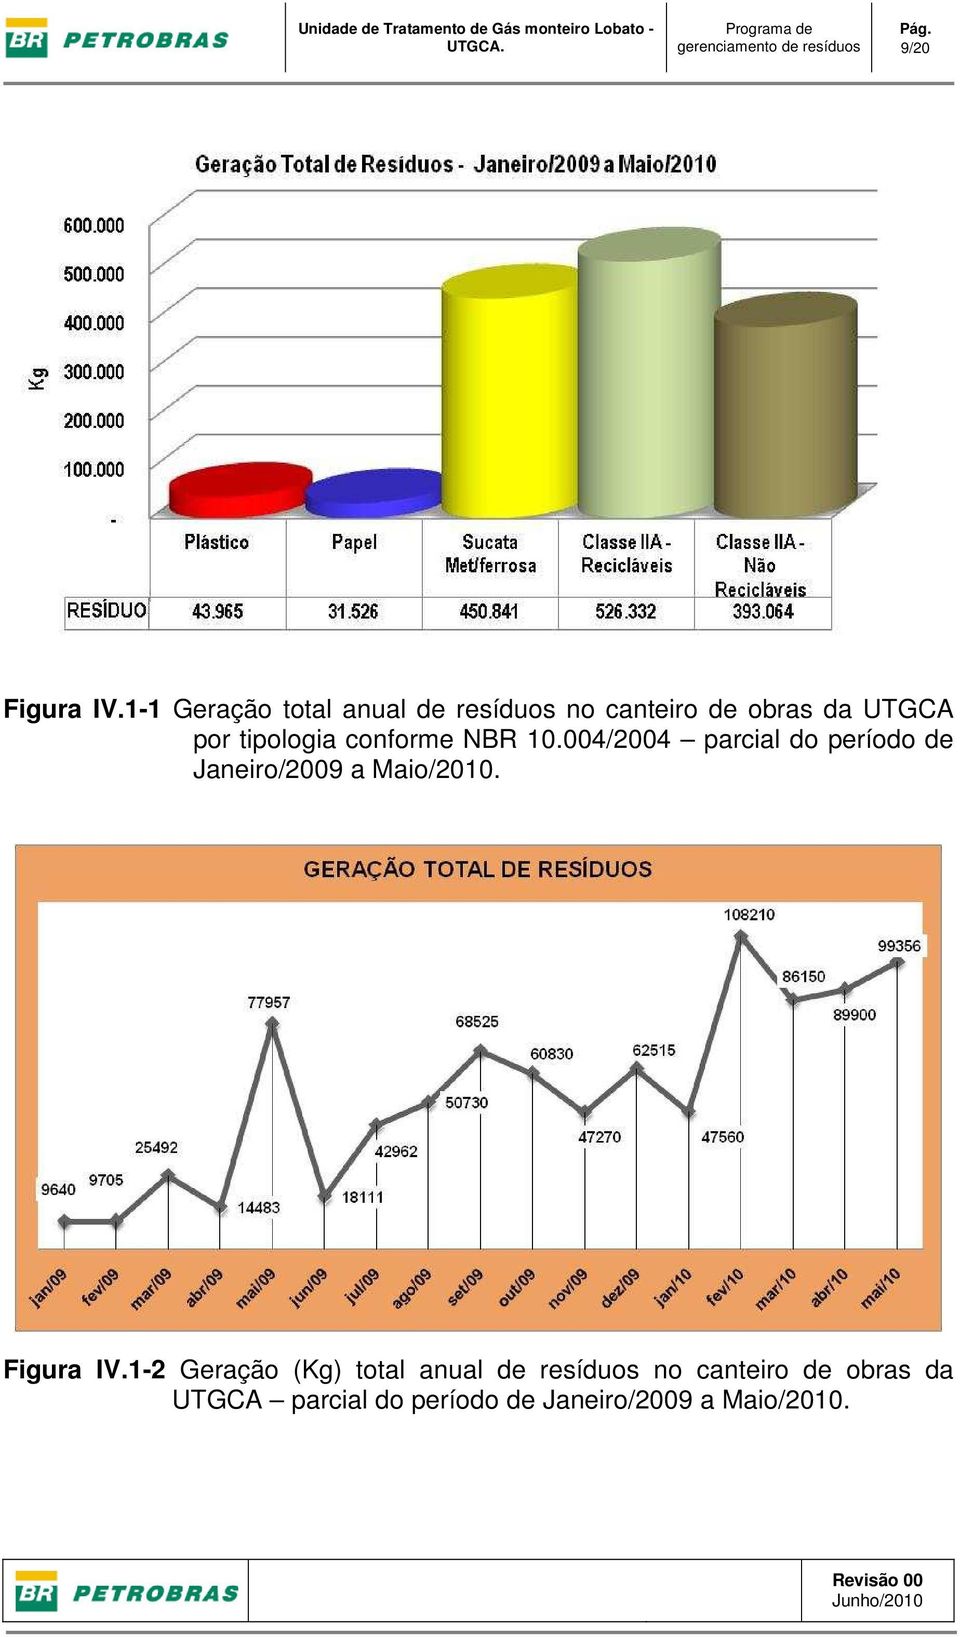 1-1 Geração total anual de resíduos no canteiro de obras da UTGCA por tipologia conforme NBR 10.